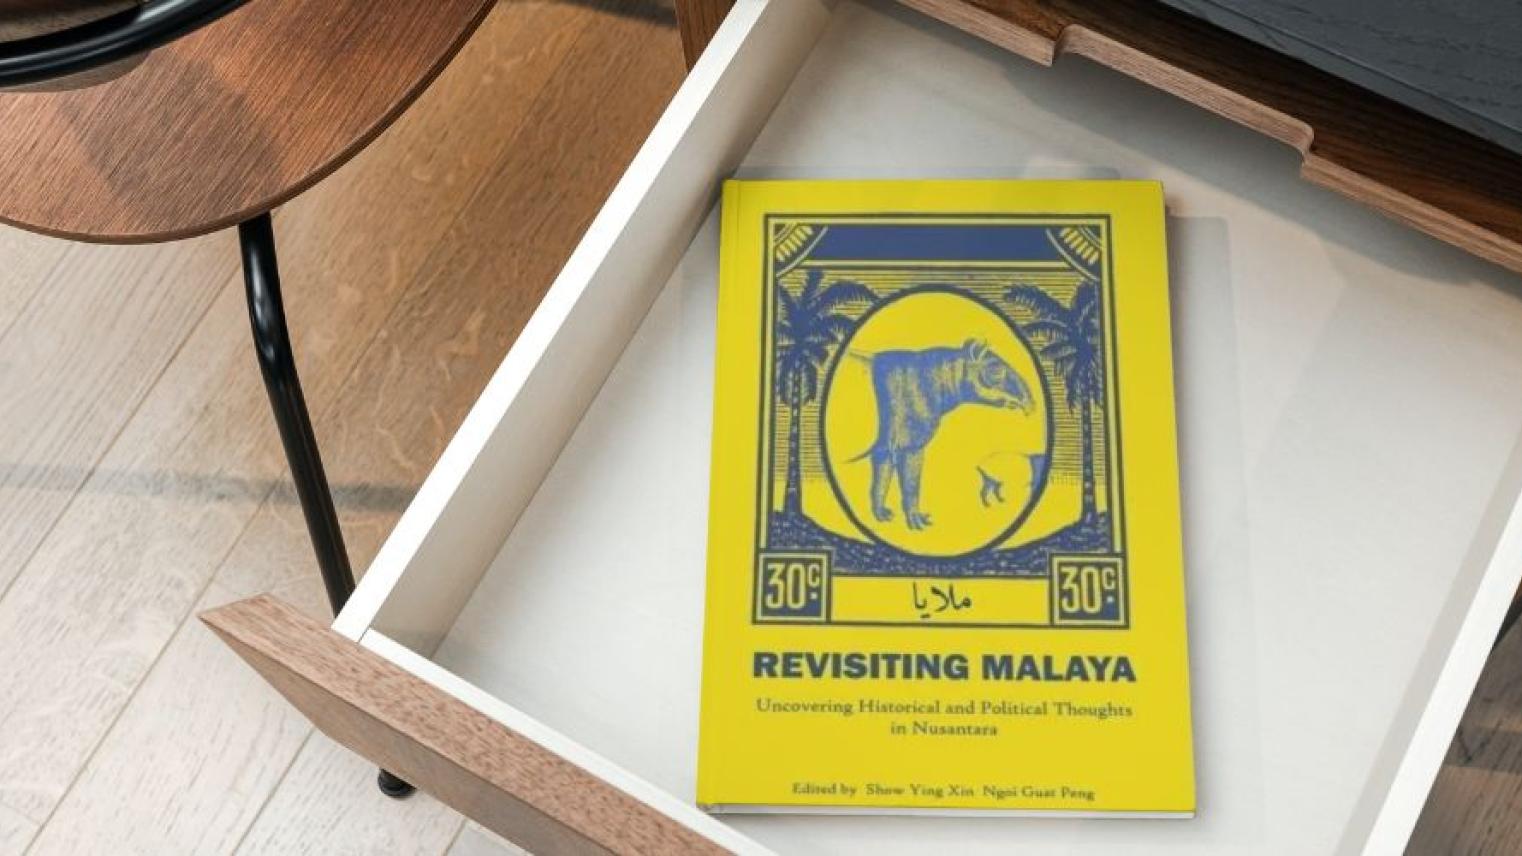 Revisiting Malaya book cover mockup